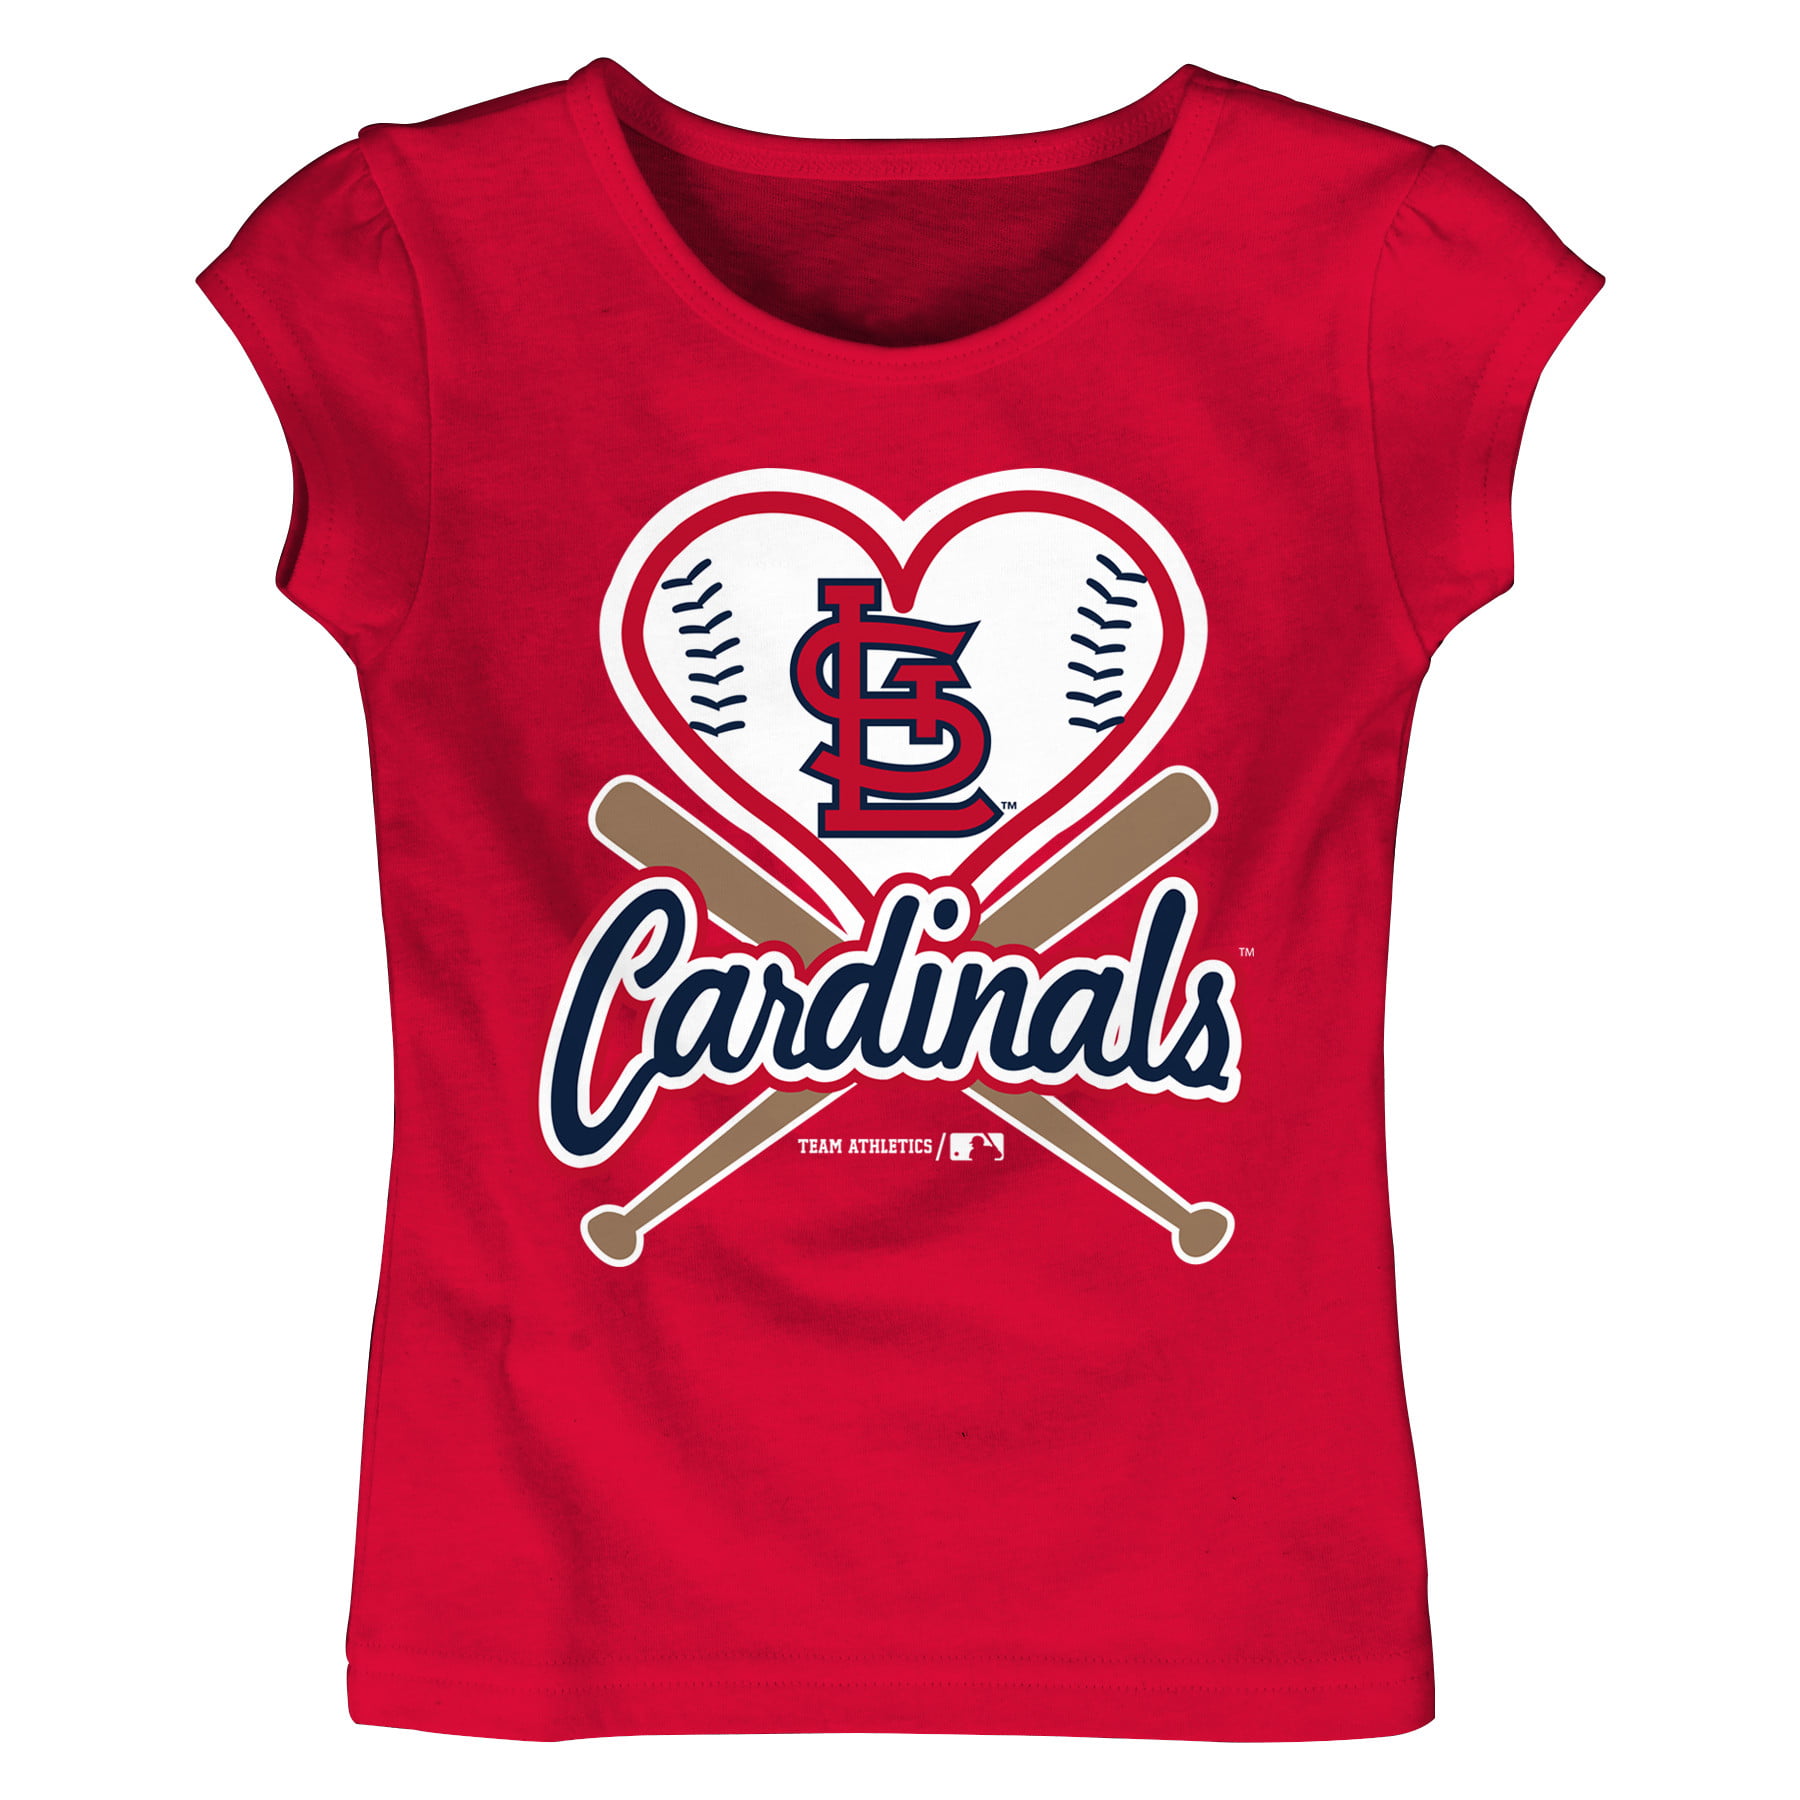 cardinals playoff shirts